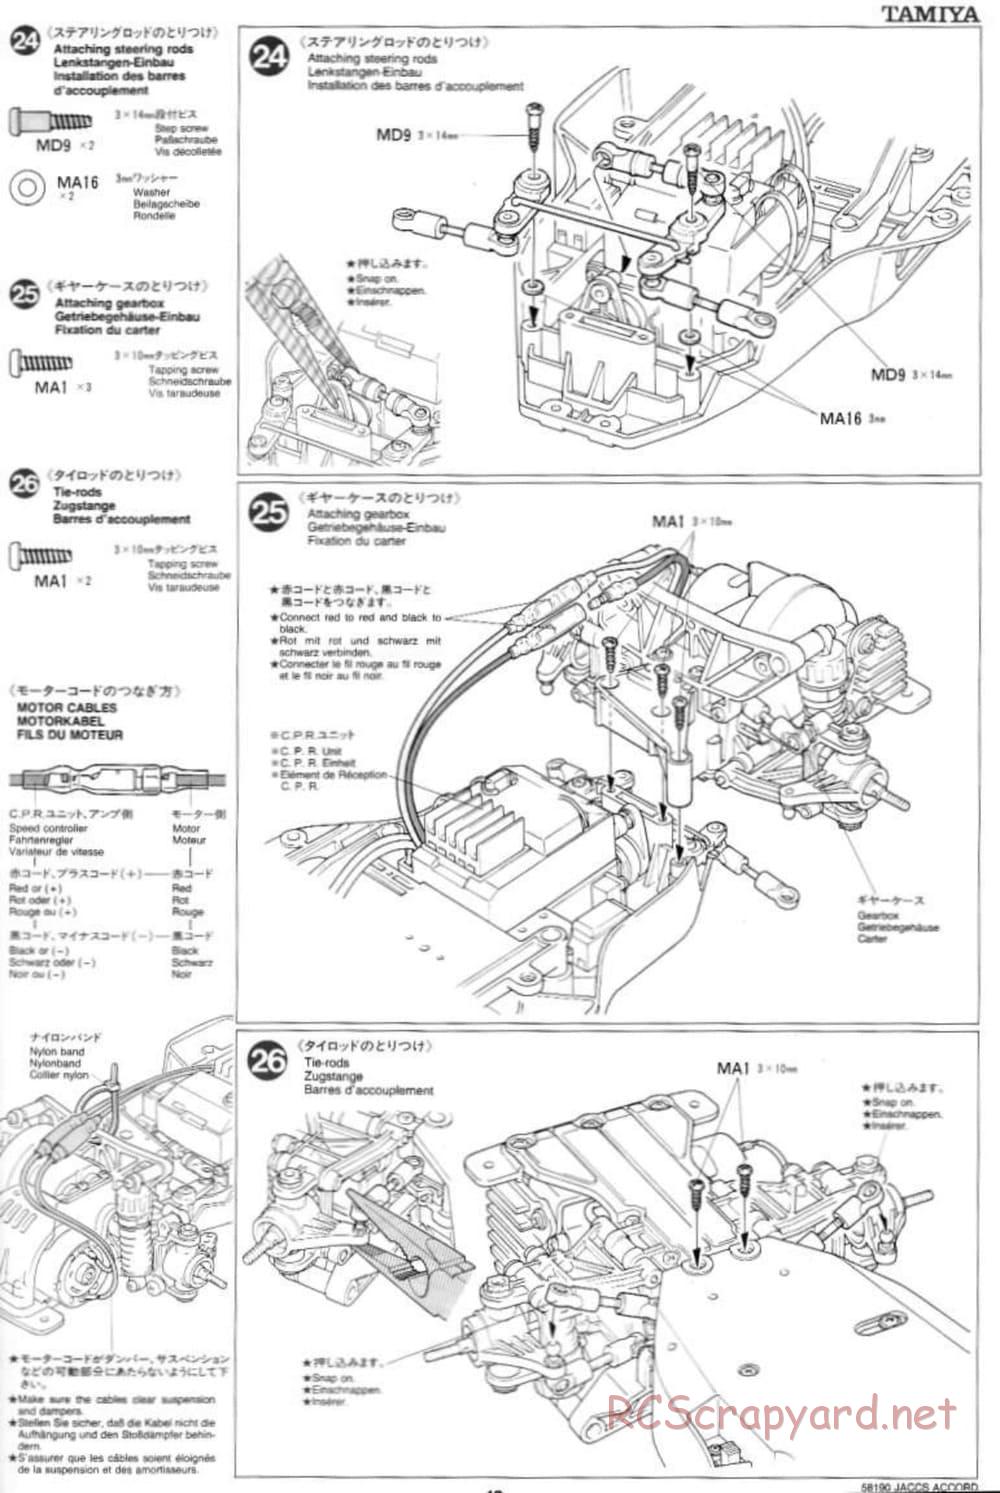 Tamiya - JACCS Honda Accord - FF-01 Chassis - Manual - Page 13